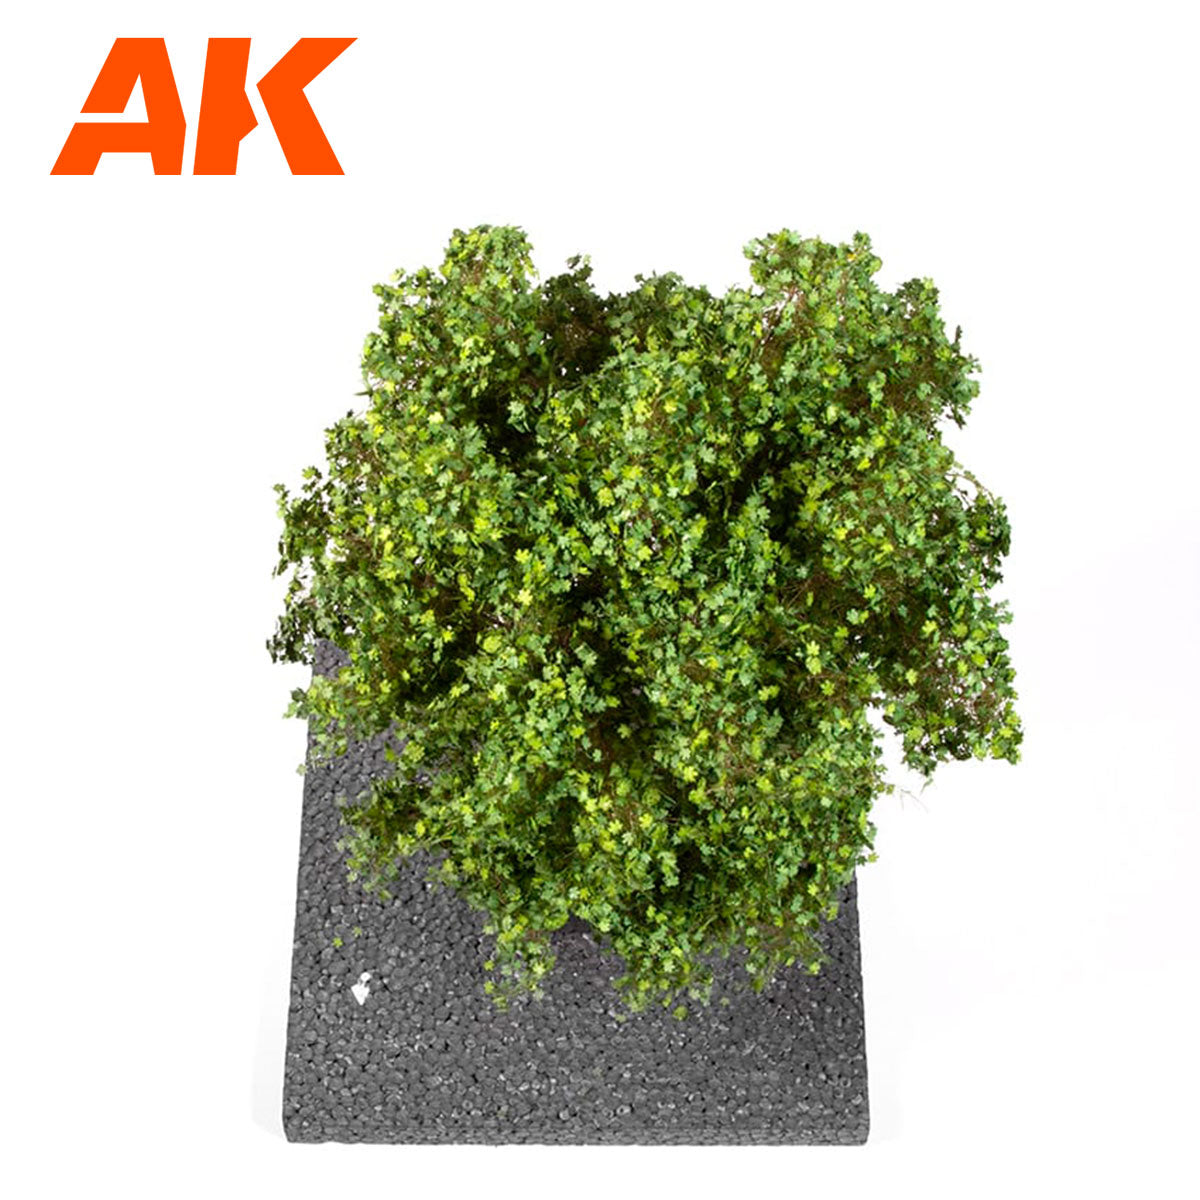 AK8189 - Maple Tree 1/35